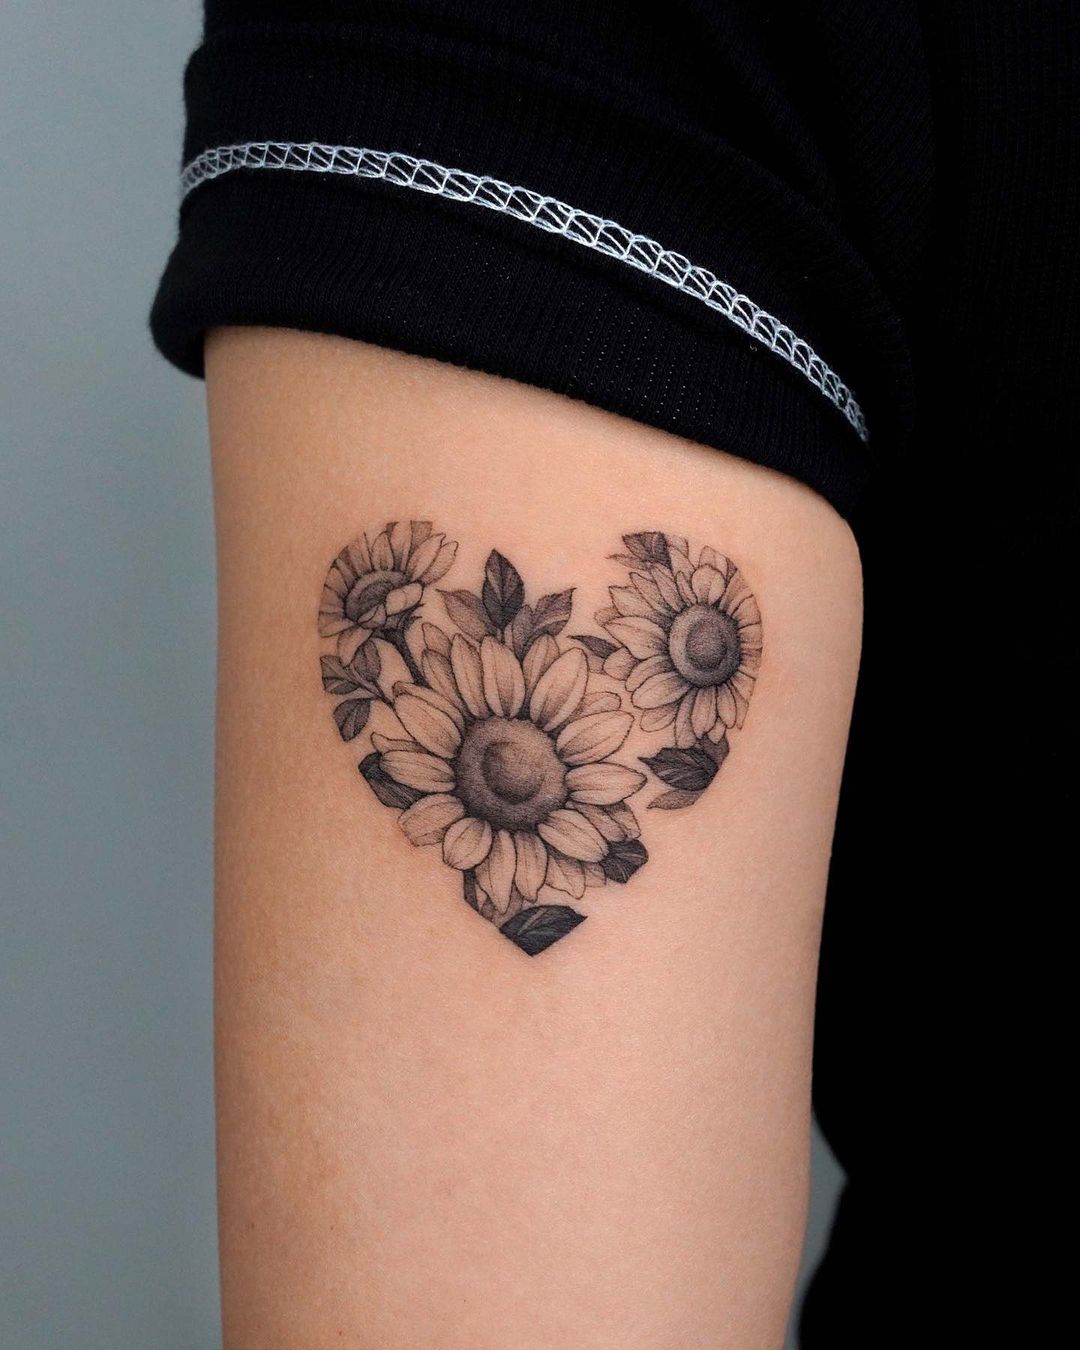 Sunflower Heart Tattoo On Thigh